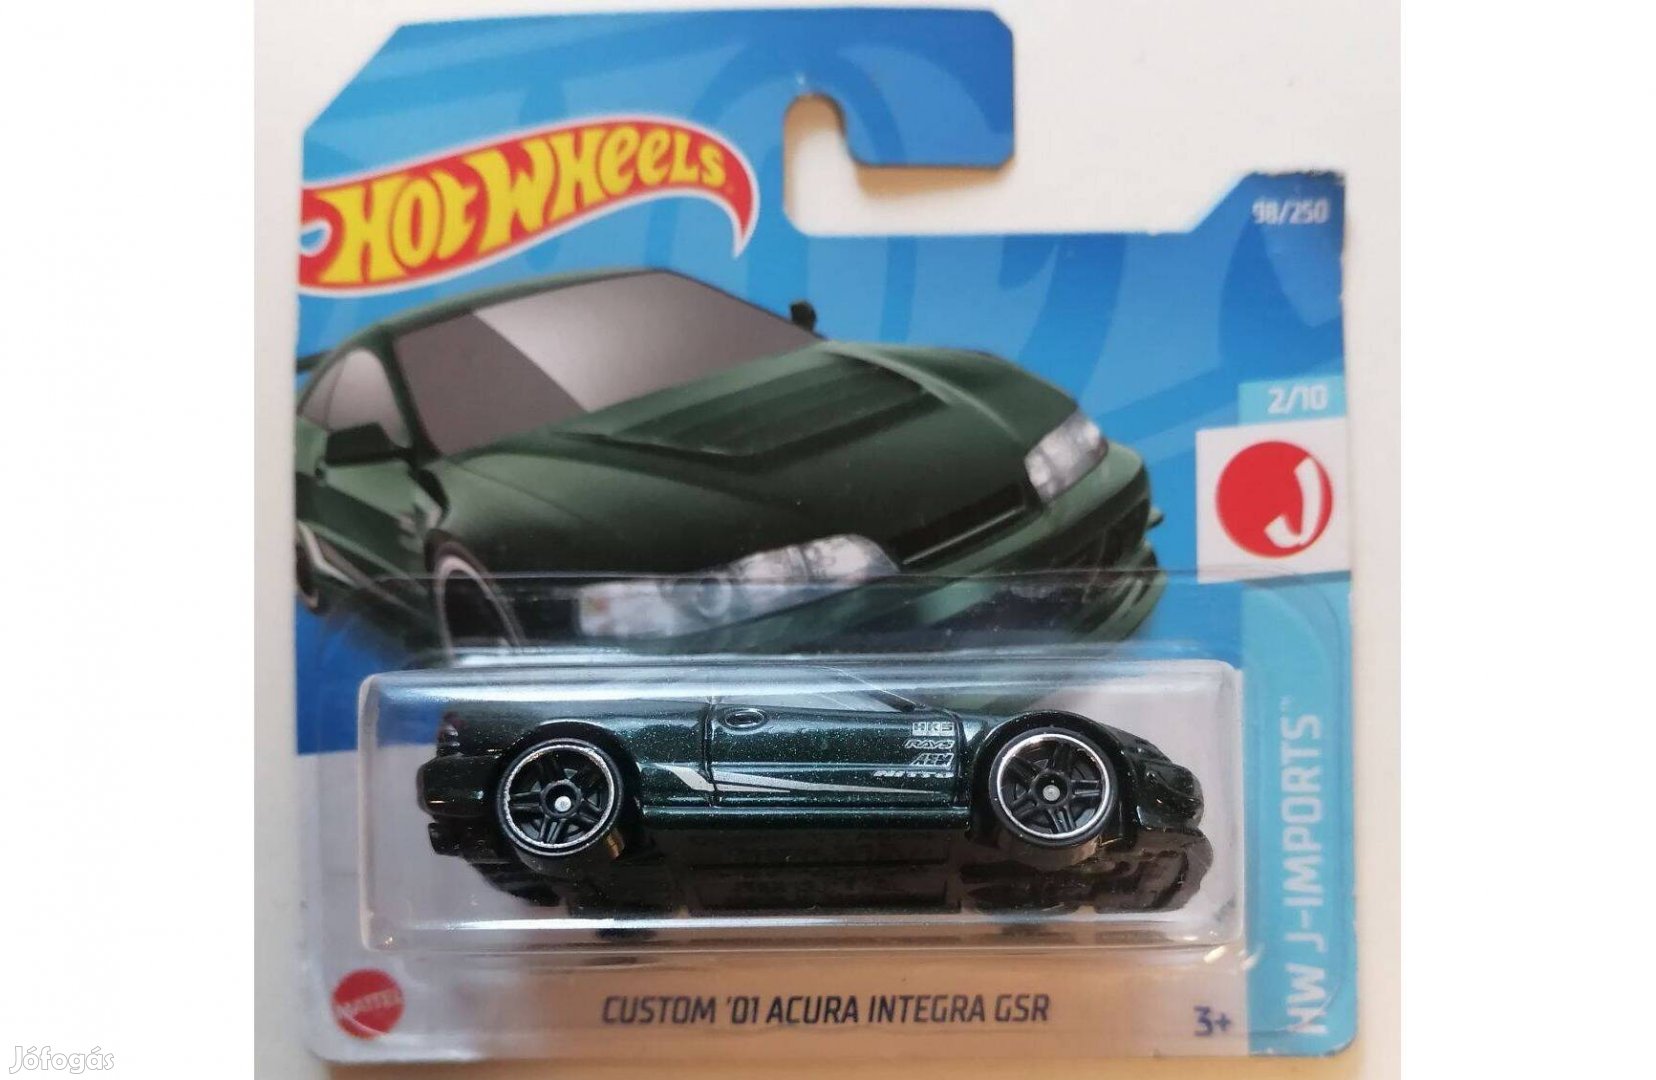 Hot Wheels Custom '01 Acura Integra Gsr